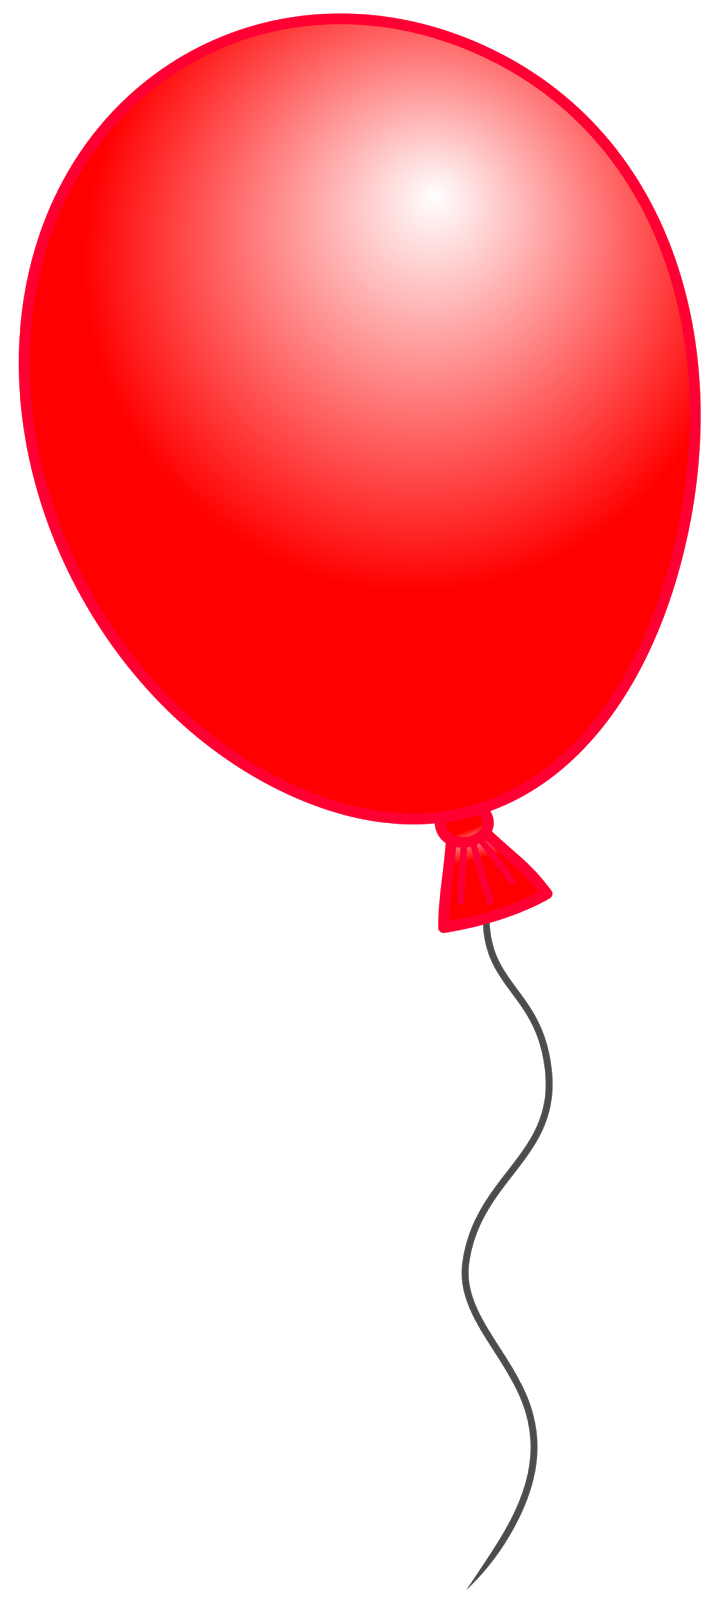 Balloon Clip Art - Clipartion